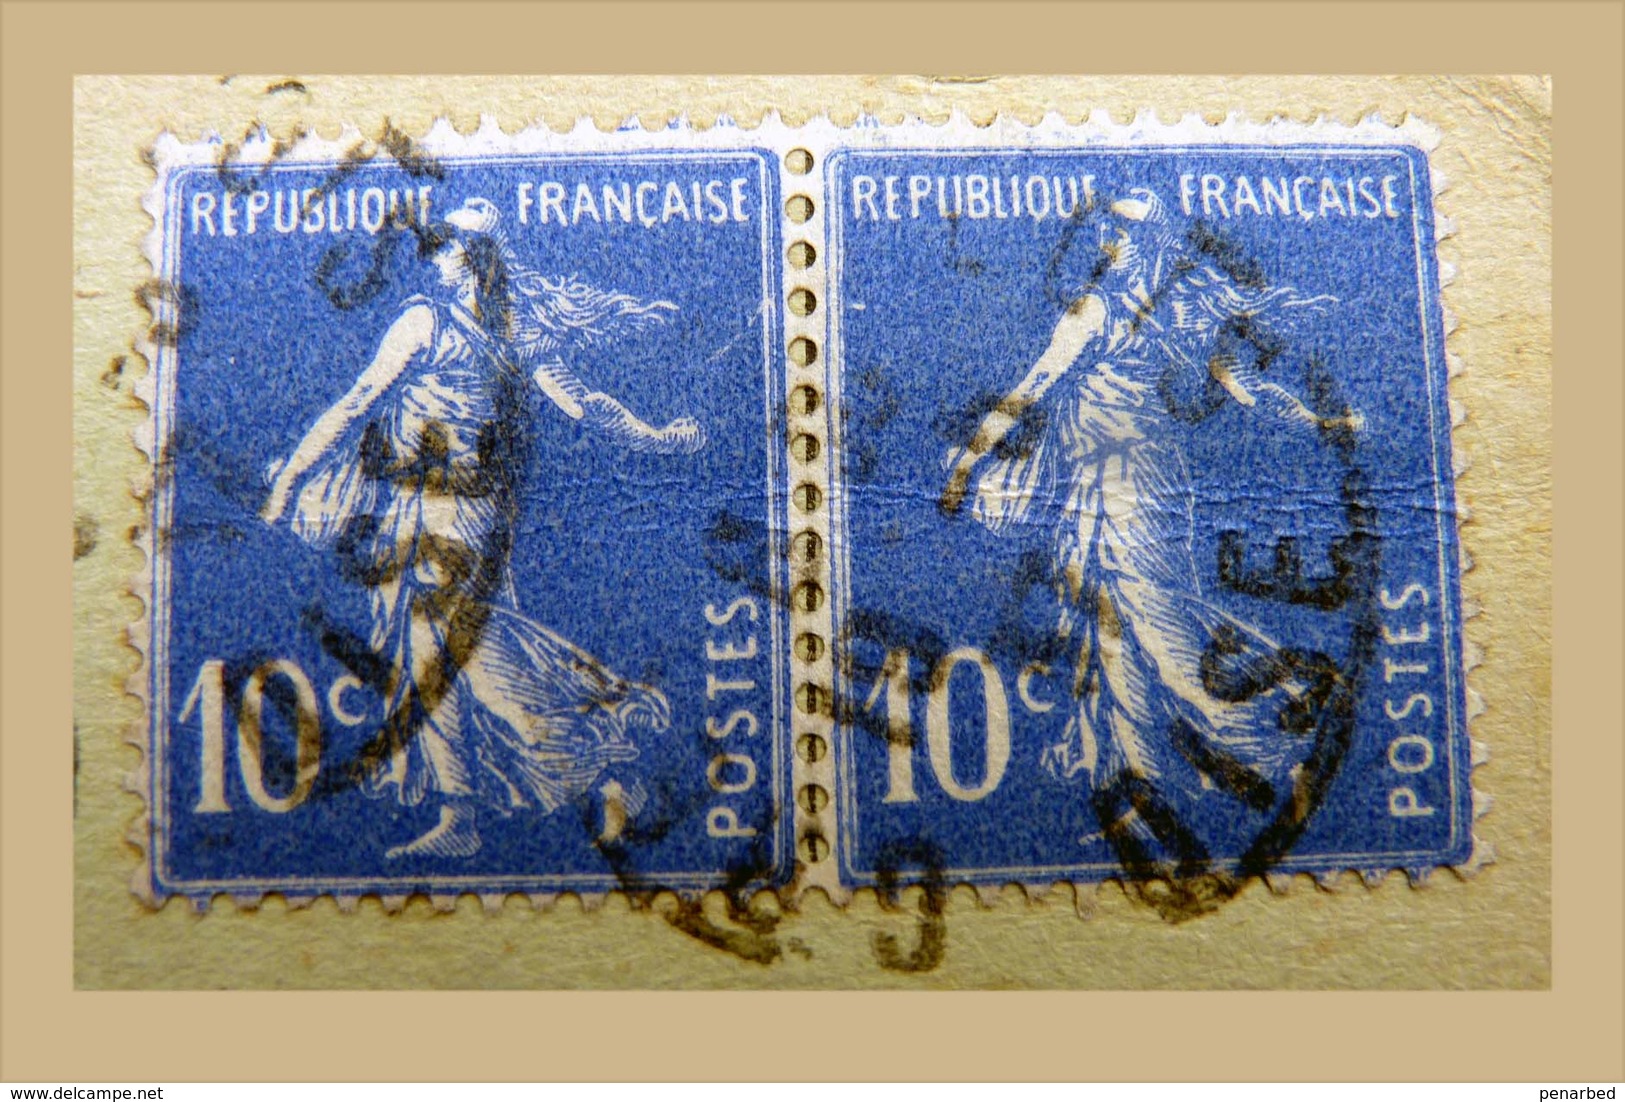 roulette sur 21 plis ( 1 enveloppe et 20 cartes postales )  Semeuse et Pasteur / carte Samaritaine Bon Marché et autres